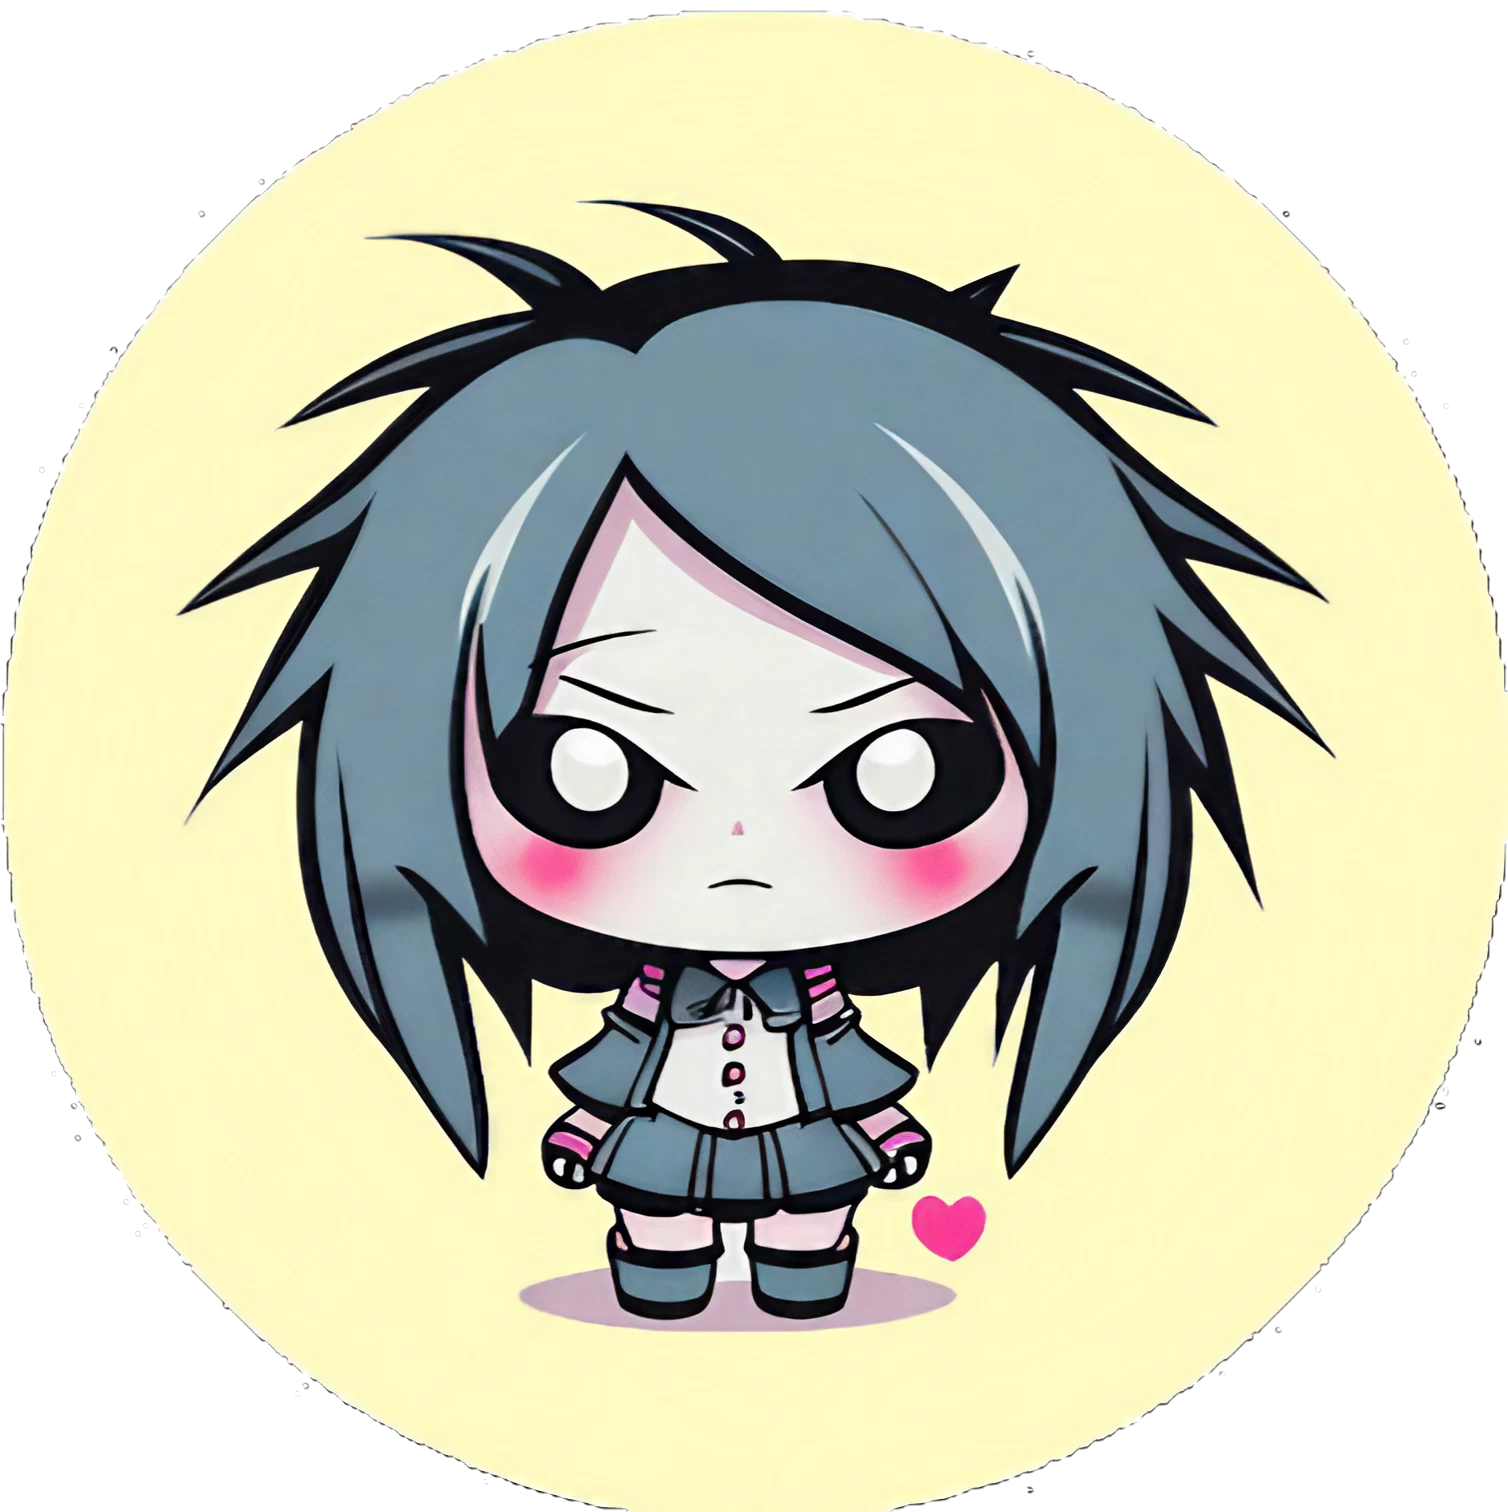 Cute Kawaii Gothic Girl Annabell - Sticker - 3x3cm